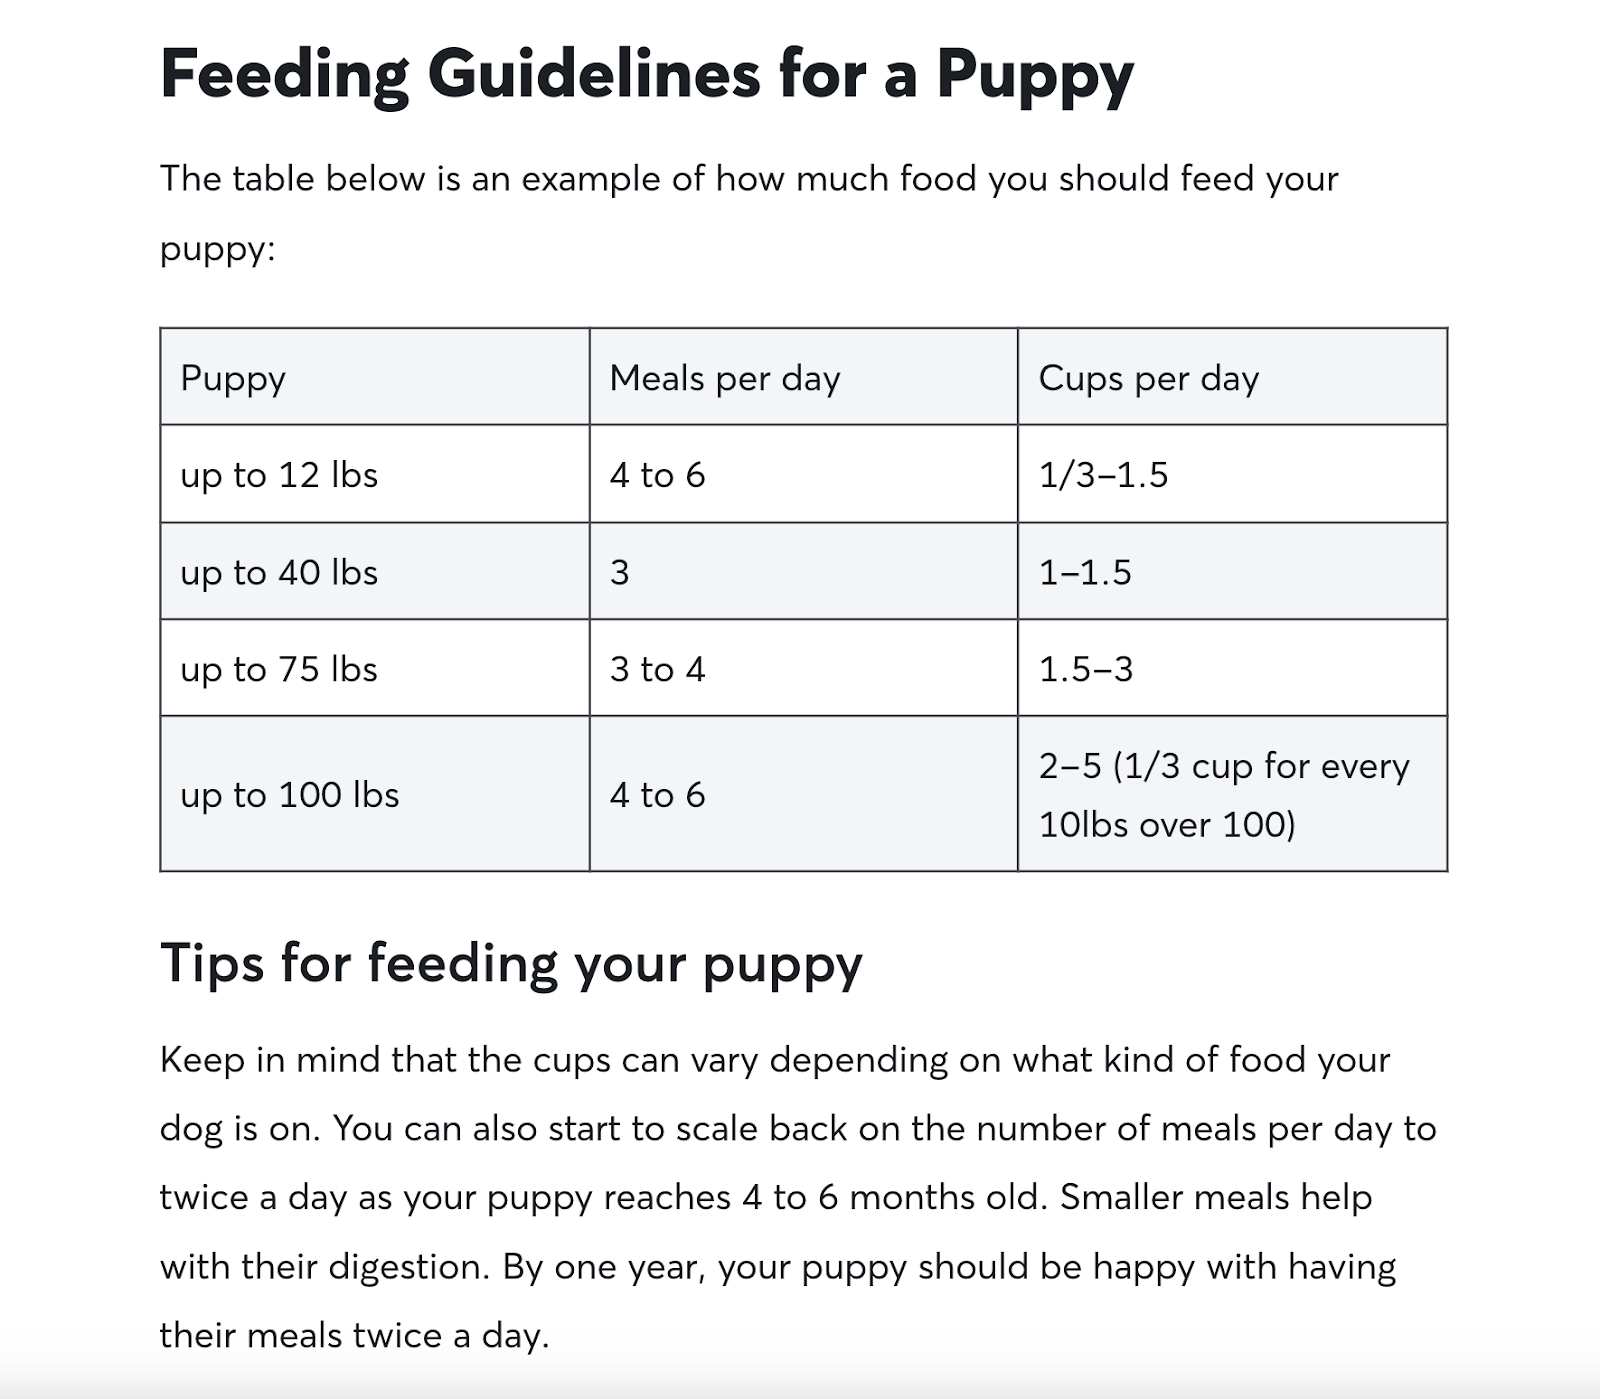 Bảng trong hướng dẫn cho việc cho chó ăn của Rover, hiển thị hướng dẫn cho việc cho ăn cho các kích thước chó con khác nhau